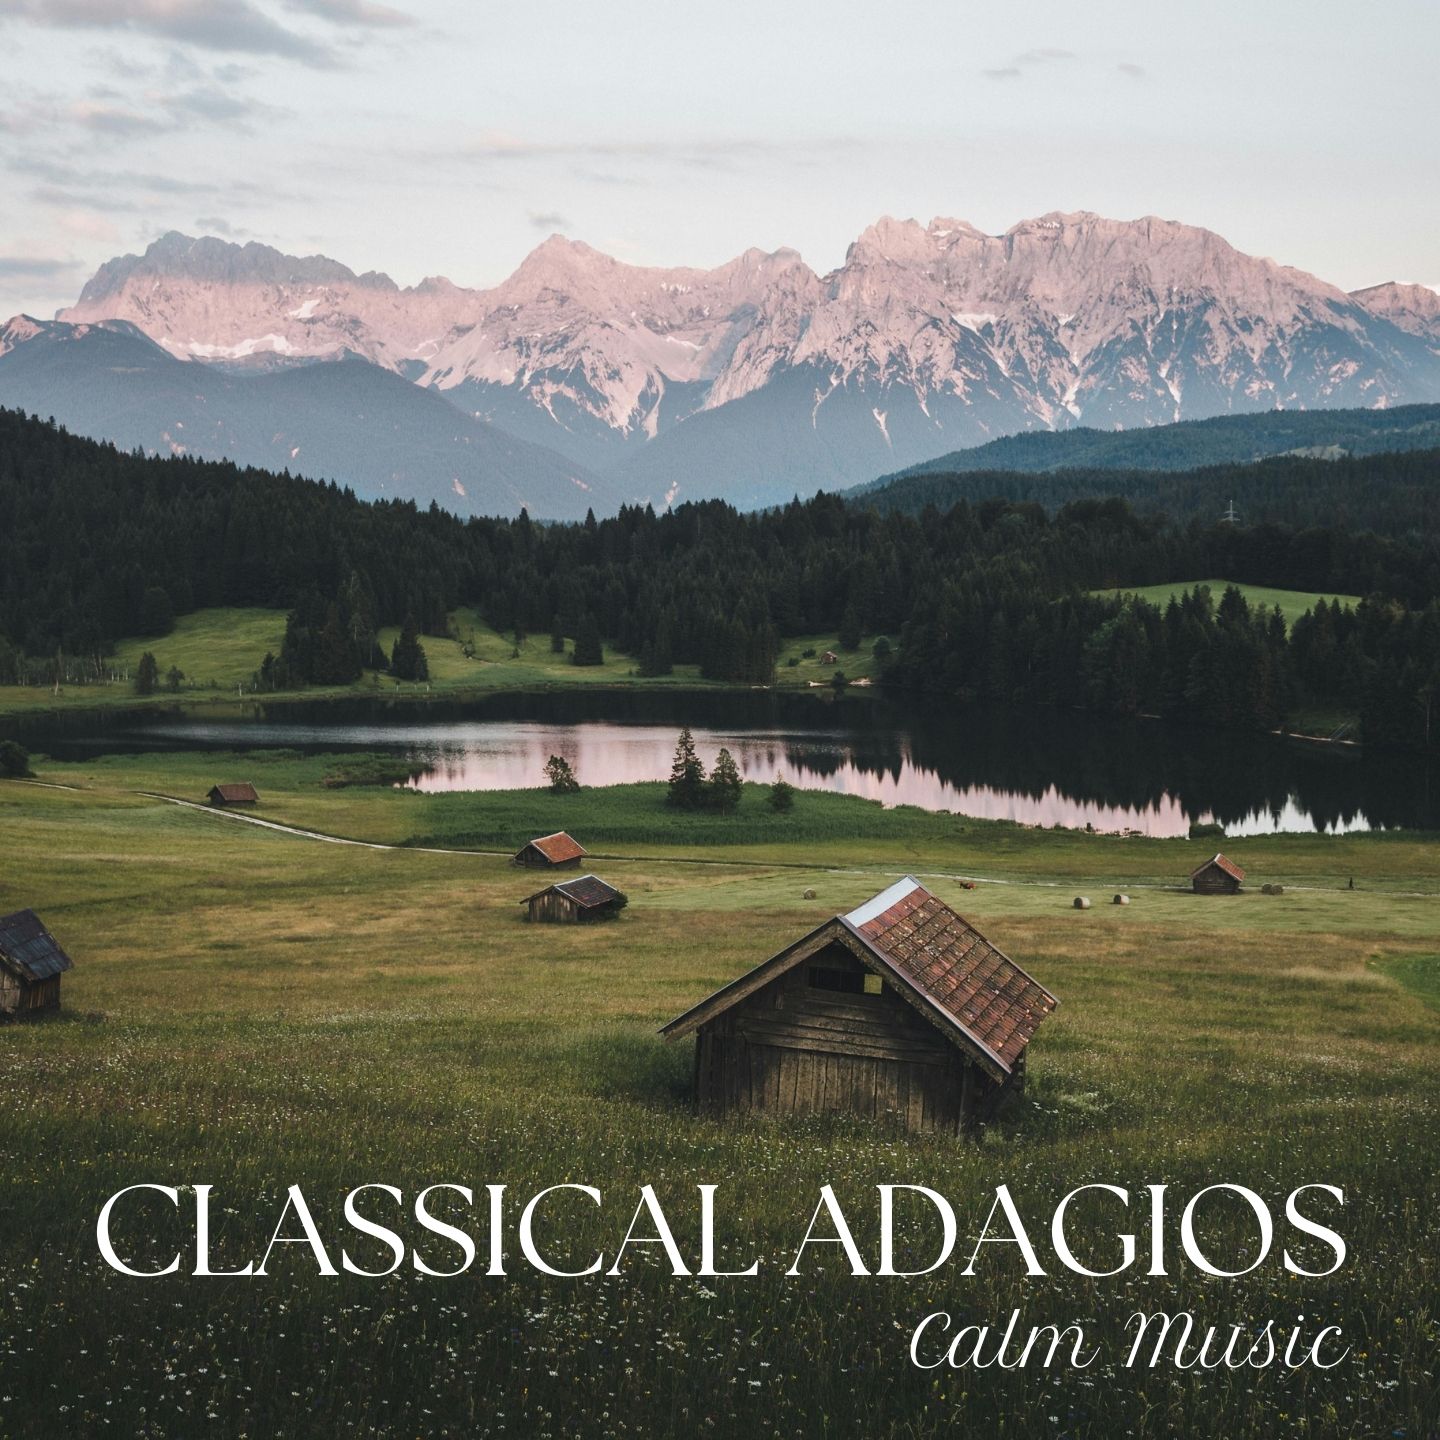 Classical Adagios